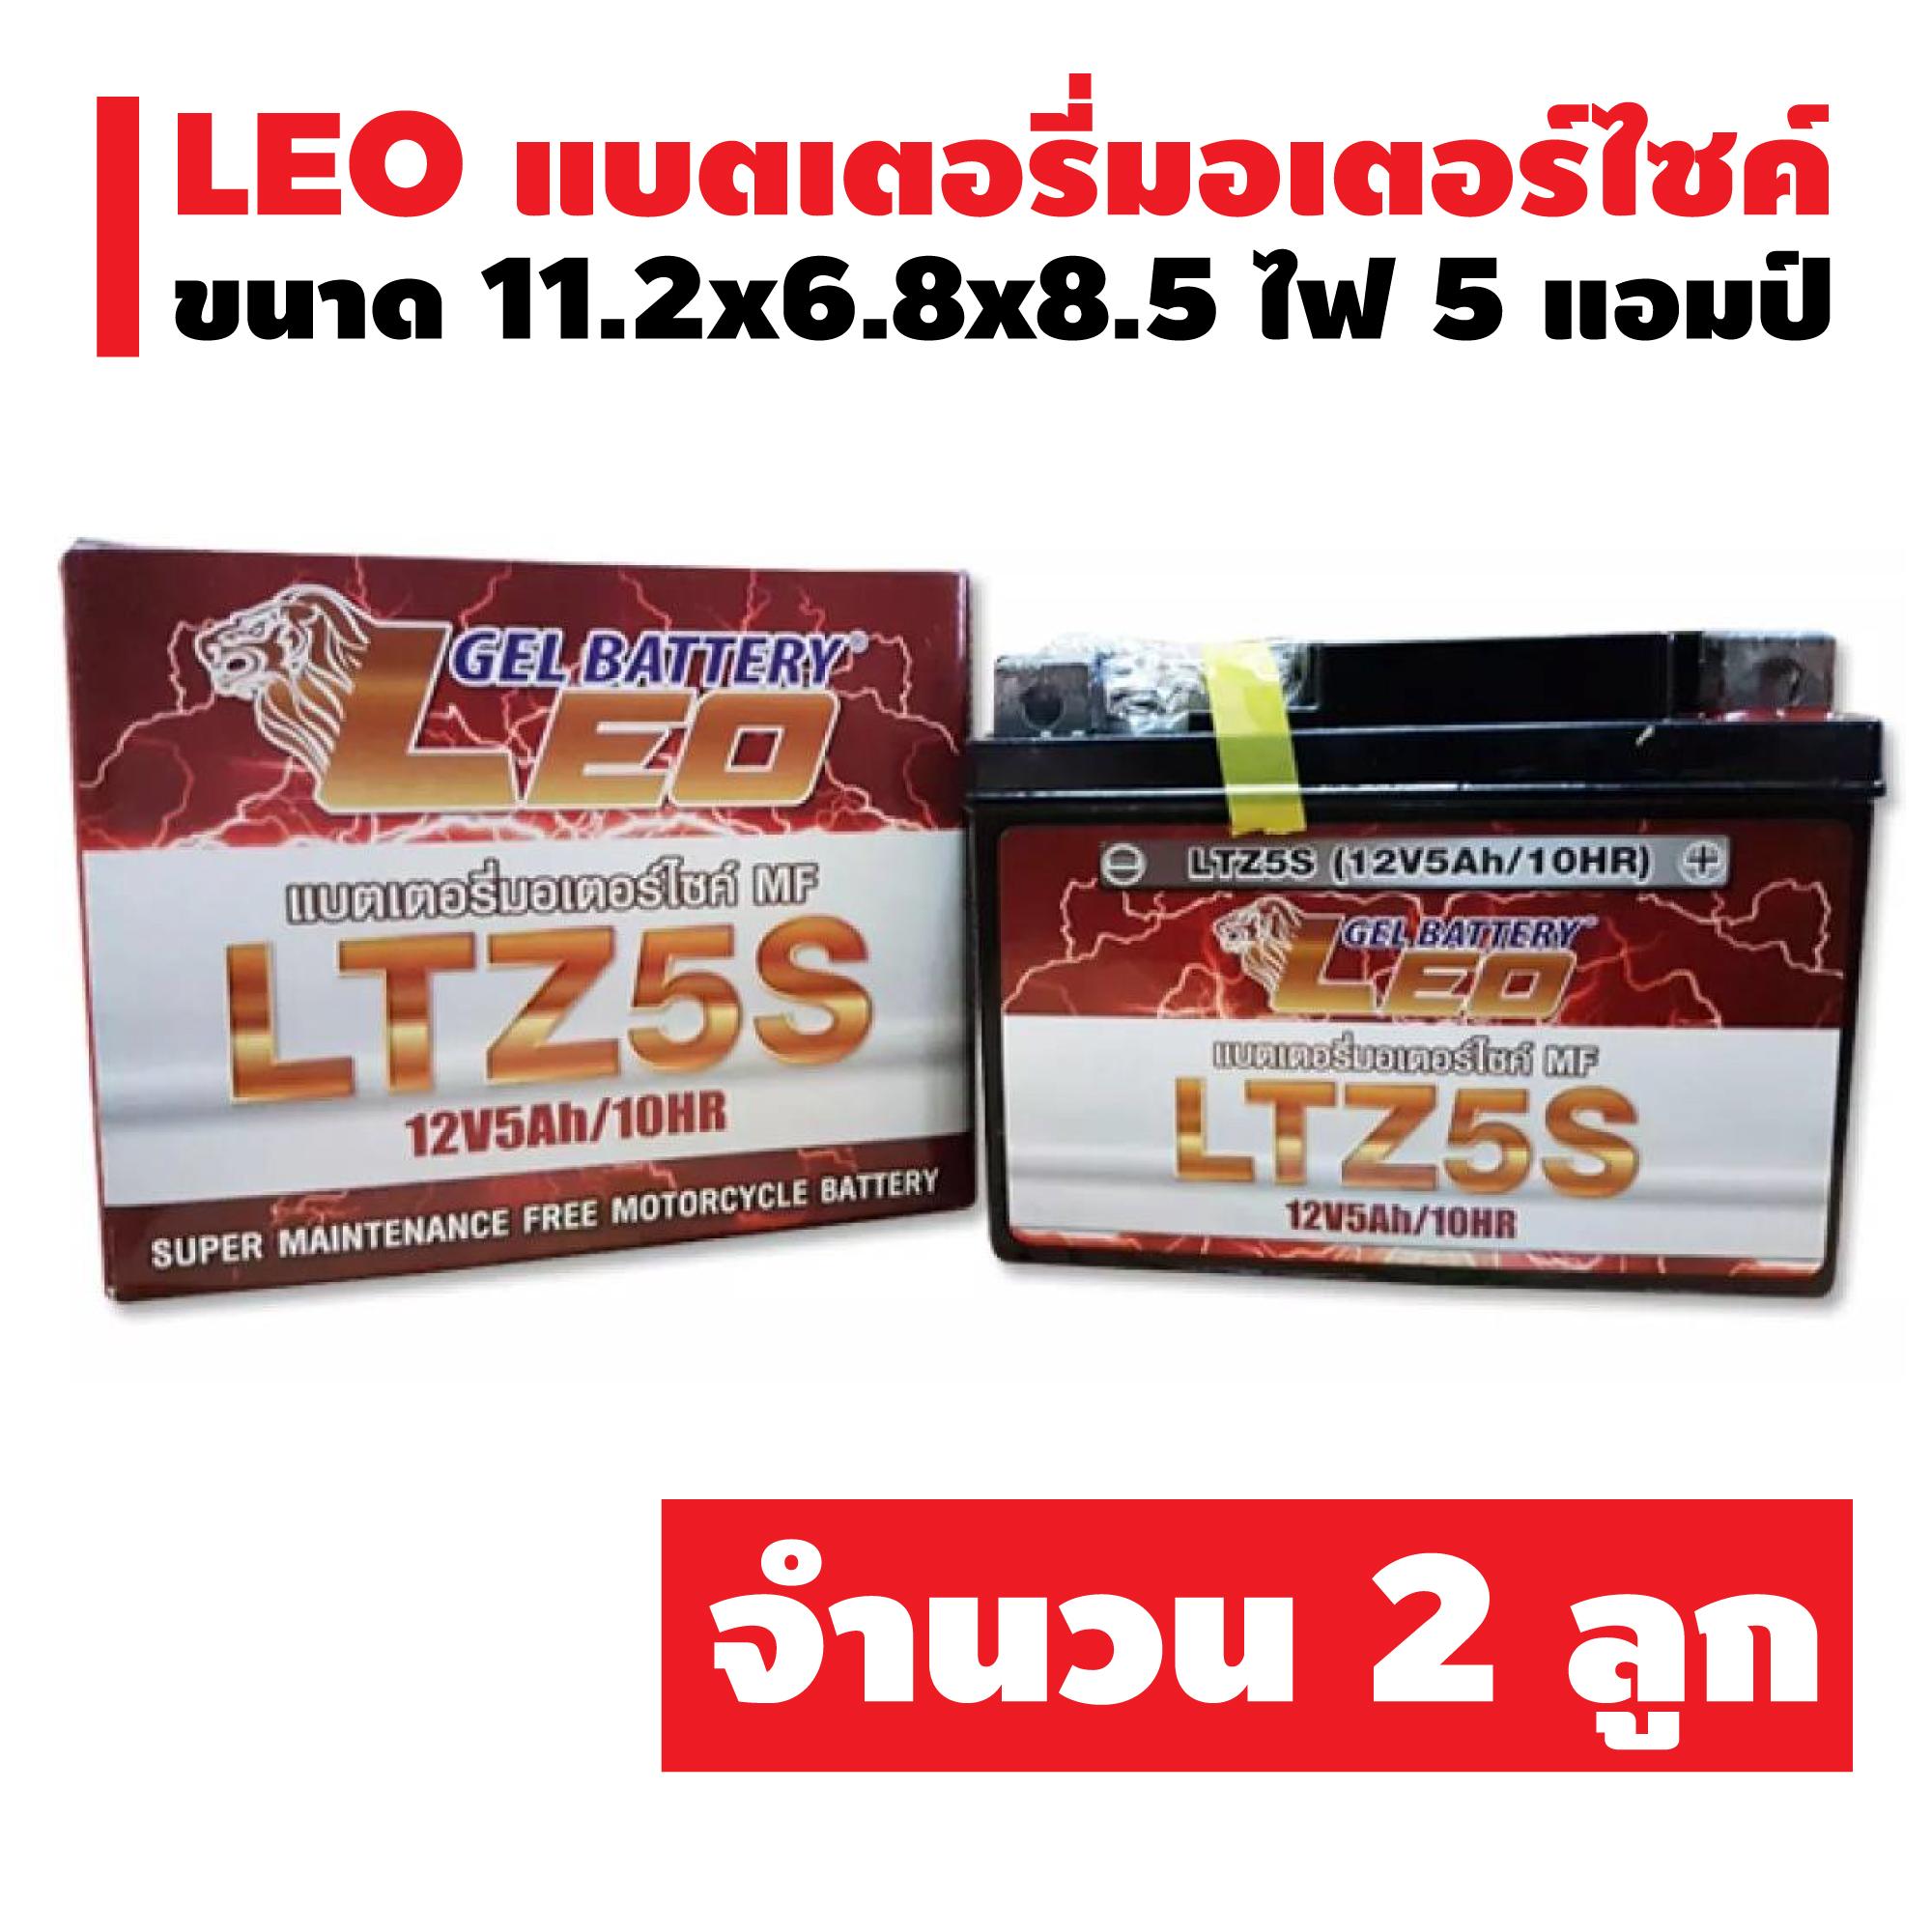 (โปรเด็ด ซื้อ 2 ลูก ราคาถูกกว่า) แบตเตอรี่แห้ง LEO LTZ-5 (5 แอมป์) สำหรับมอเตอร์ไซค์